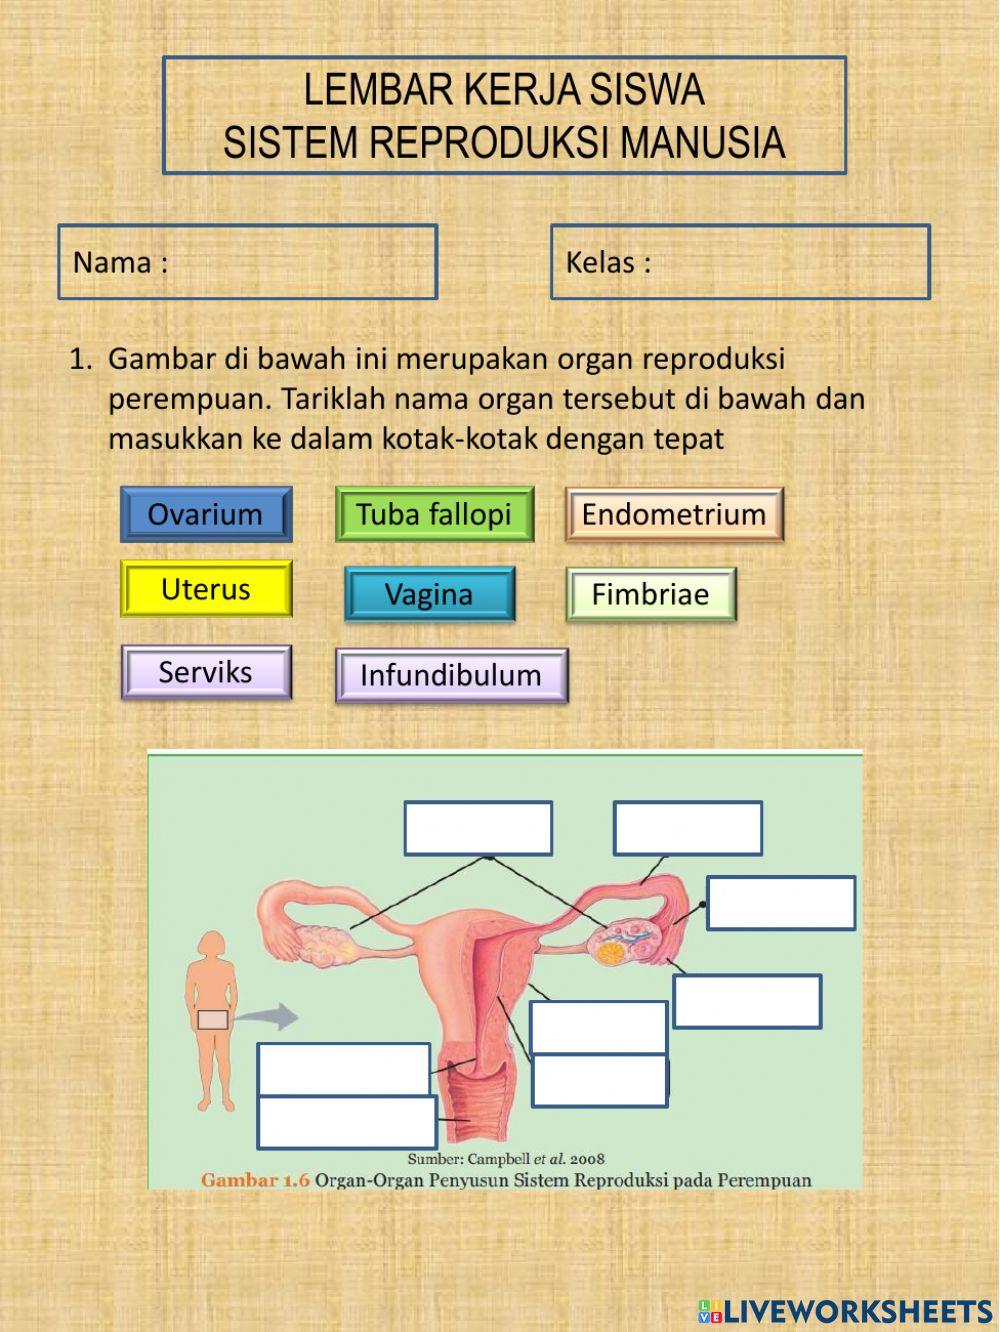 Sistem reproduksi manusia